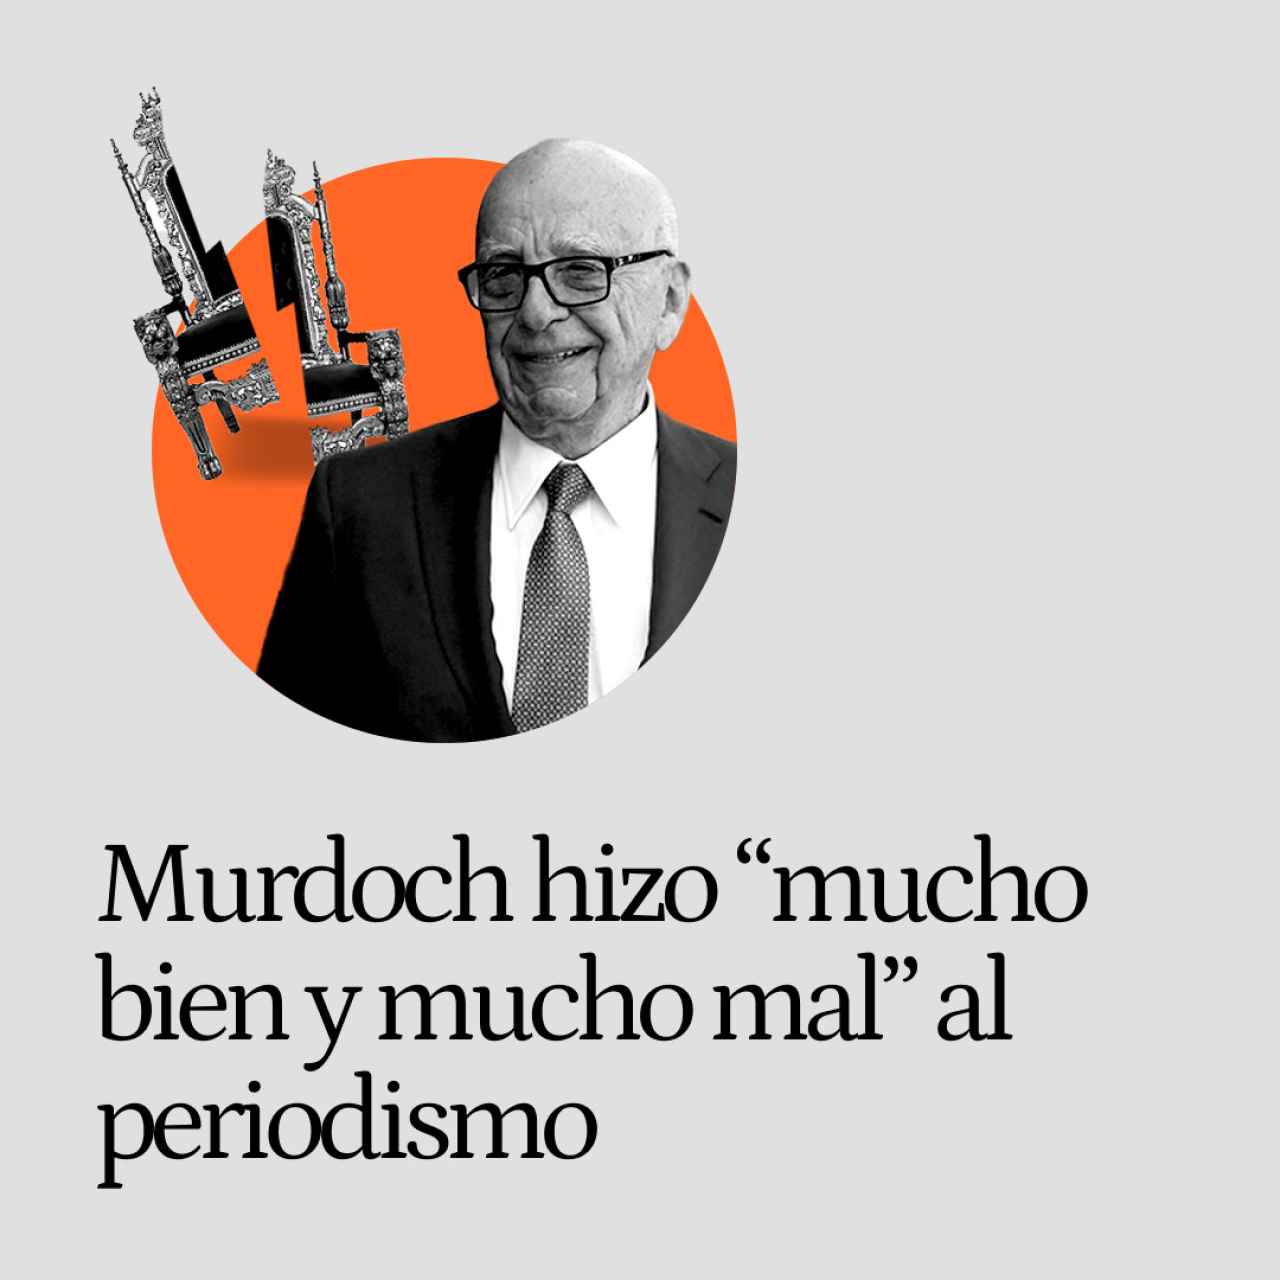 Rupert Murdoch, el hombre que hizo "mucho bien y mucho daño" al periodismo: el fin de "su batalla por la libertad de expresión"